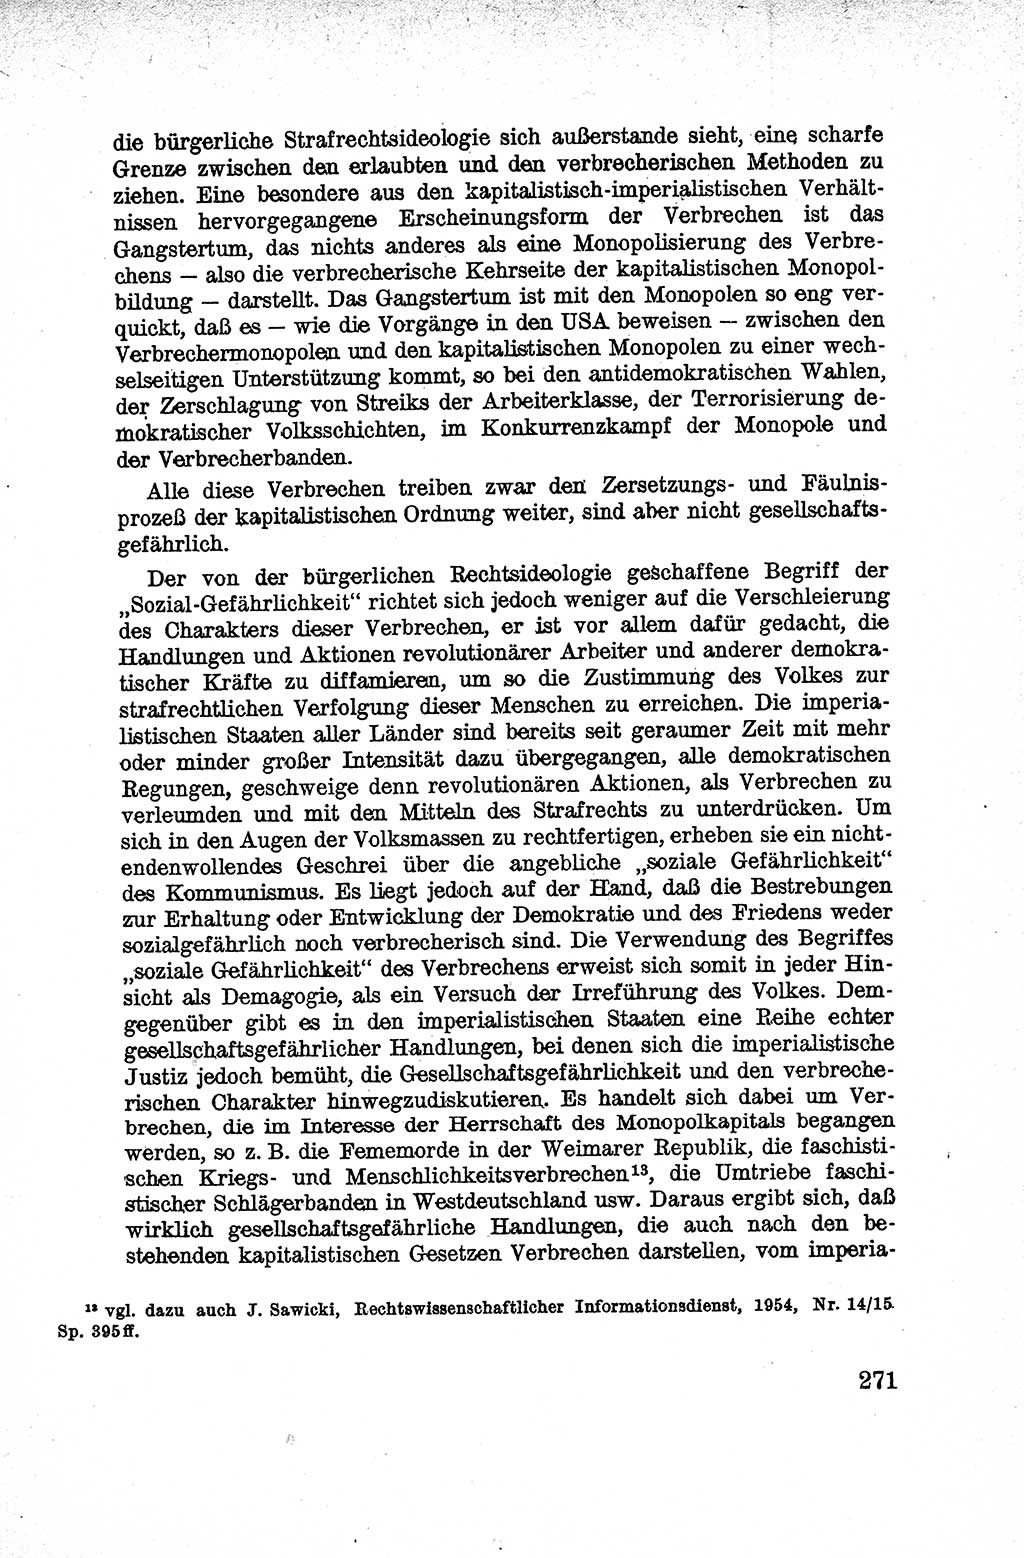 Lehrbuch des Strafrechts der Deutschen Demokratischen Republik (DDR), Allgemeiner Teil 1959, Seite 271 (Lb. Strafr. DDR AT 1959, S. 271)